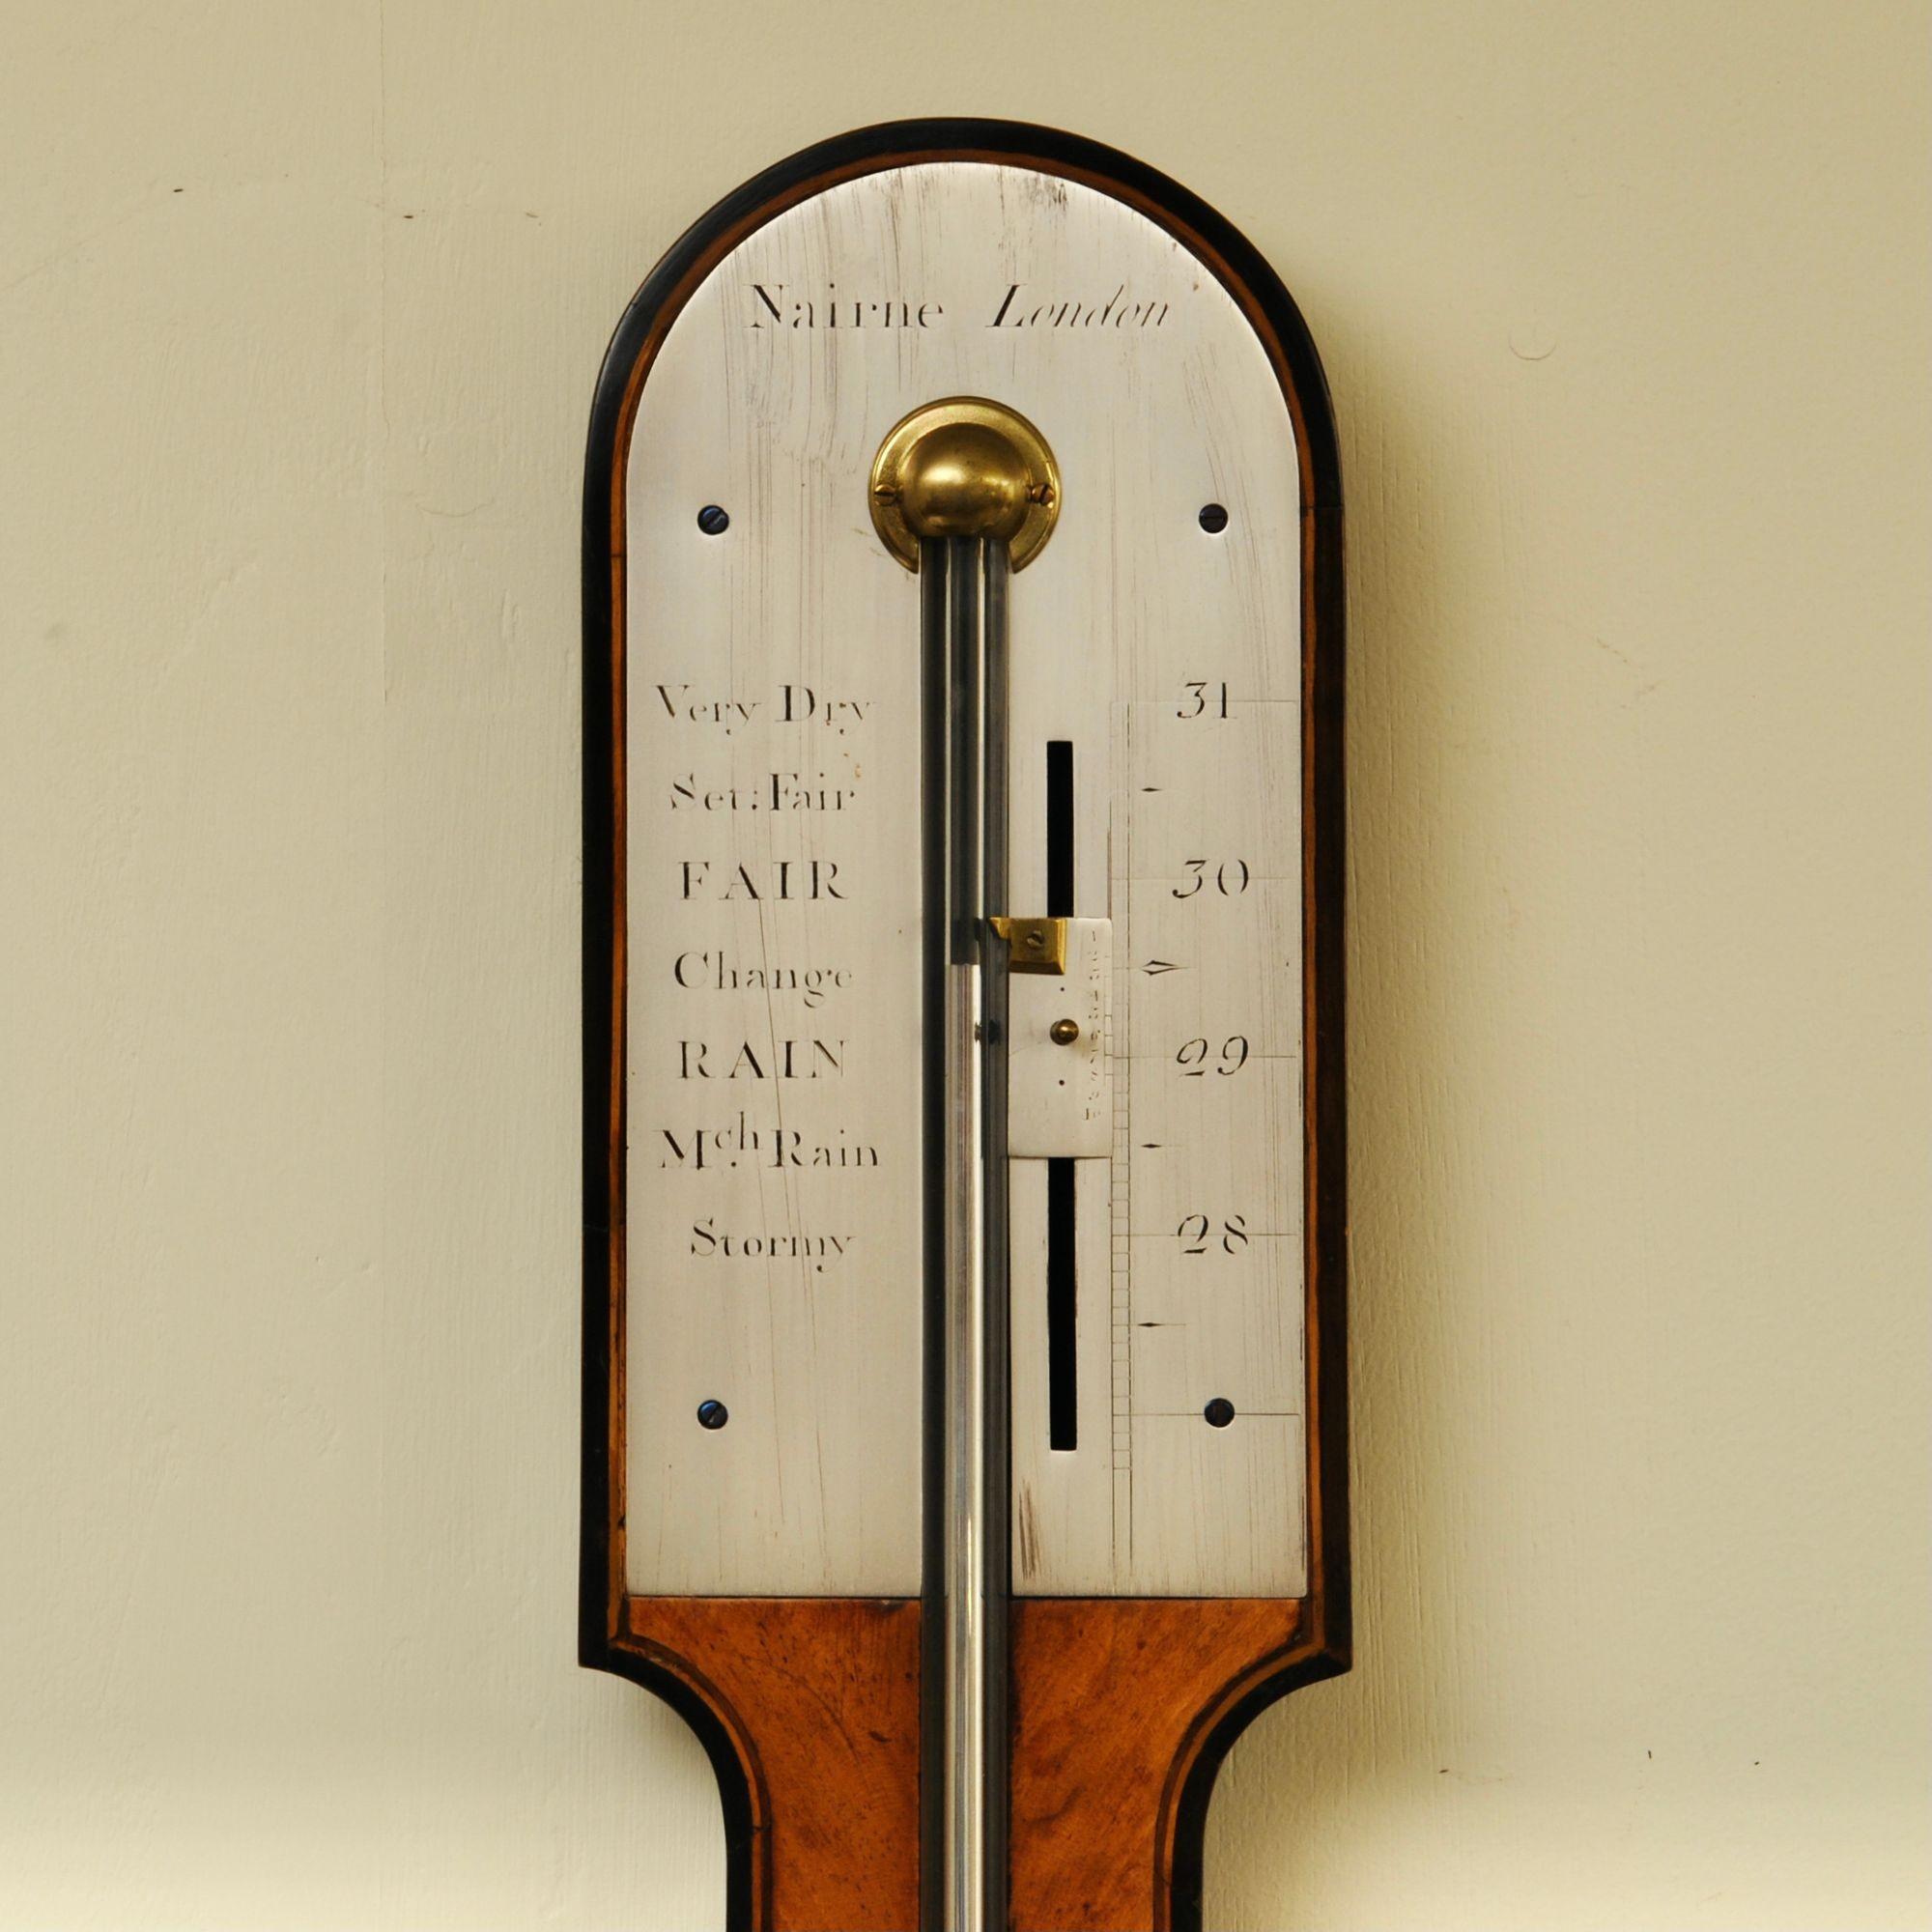 Ein elegantes Stabbarometer aus Satinholz und Ebenholz aus dem 18. Jahrhundert von Edward Nairne, London.
Nairne war ein berühmter Hersteller von wissenschaftlichen Instrumenten und Barometern aus dem 18. Jahrhundert, und dieses Exemplar ist von